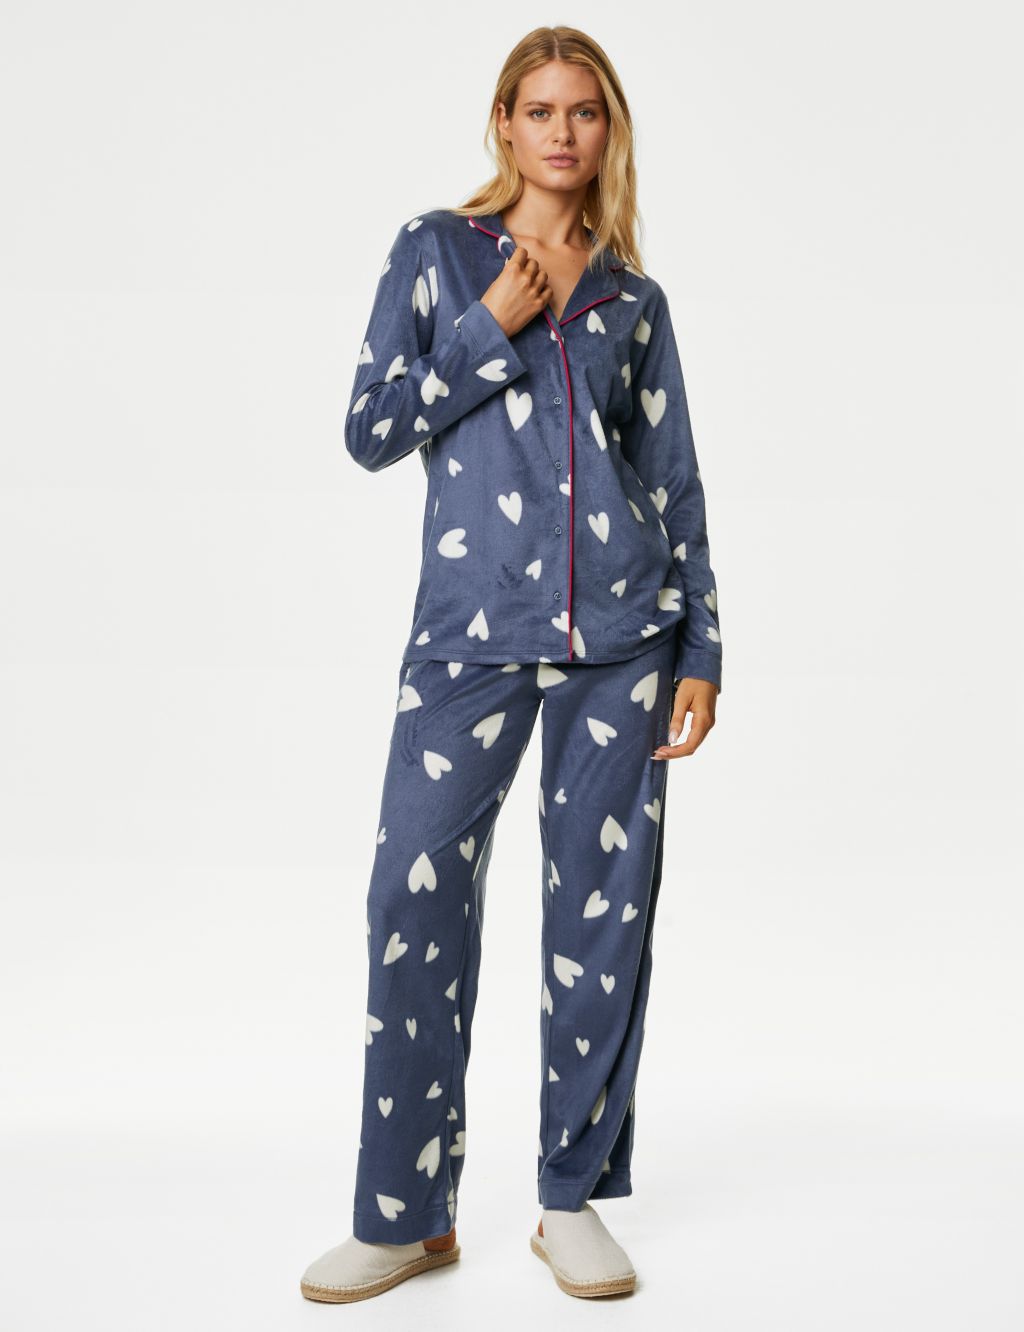 Fleece Star Print Pyjama Set image 1